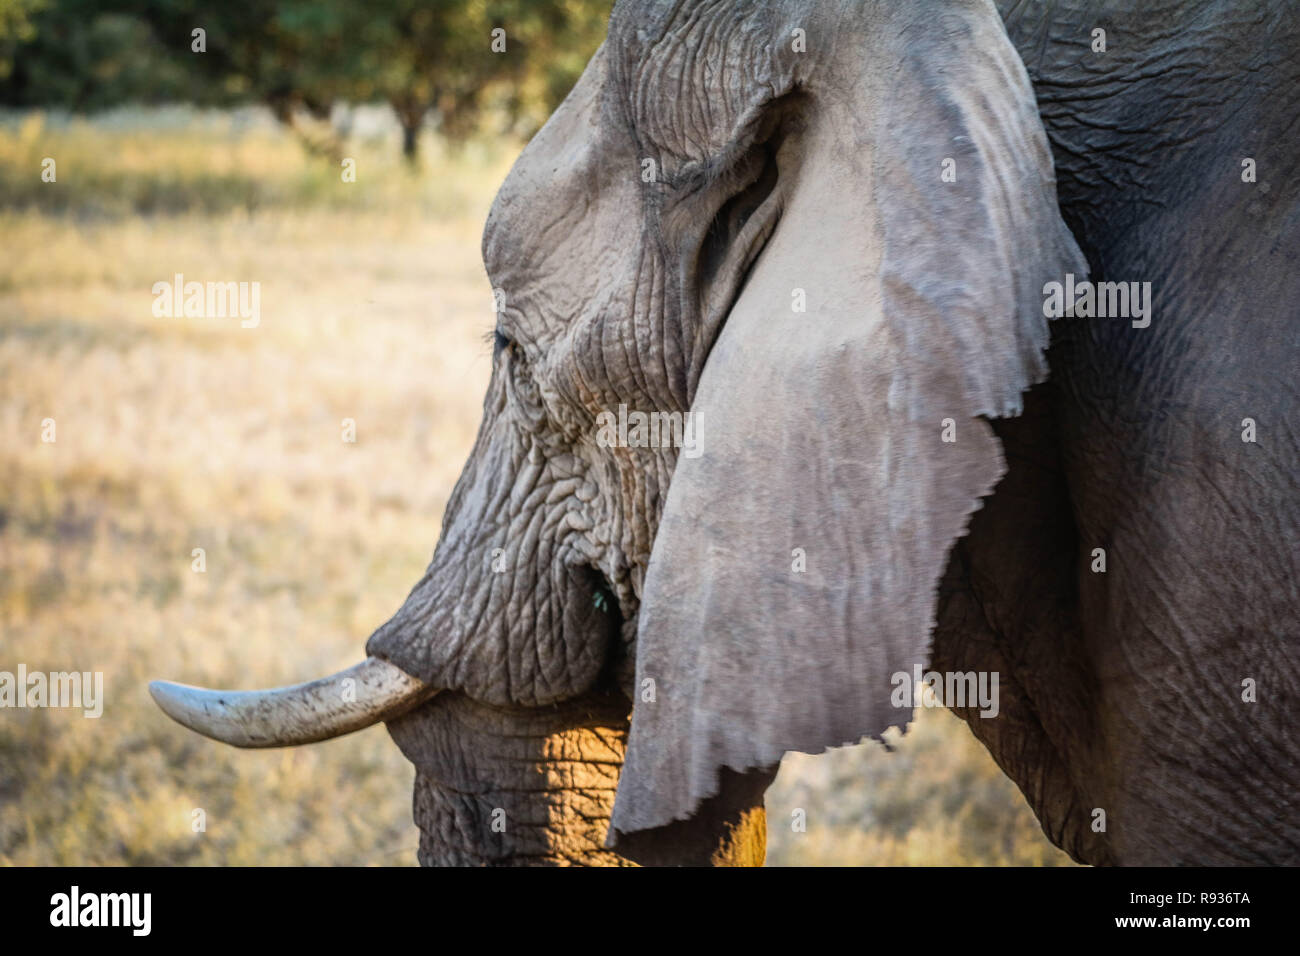 Namibienne d'éléphants sauvages Banque D'Images